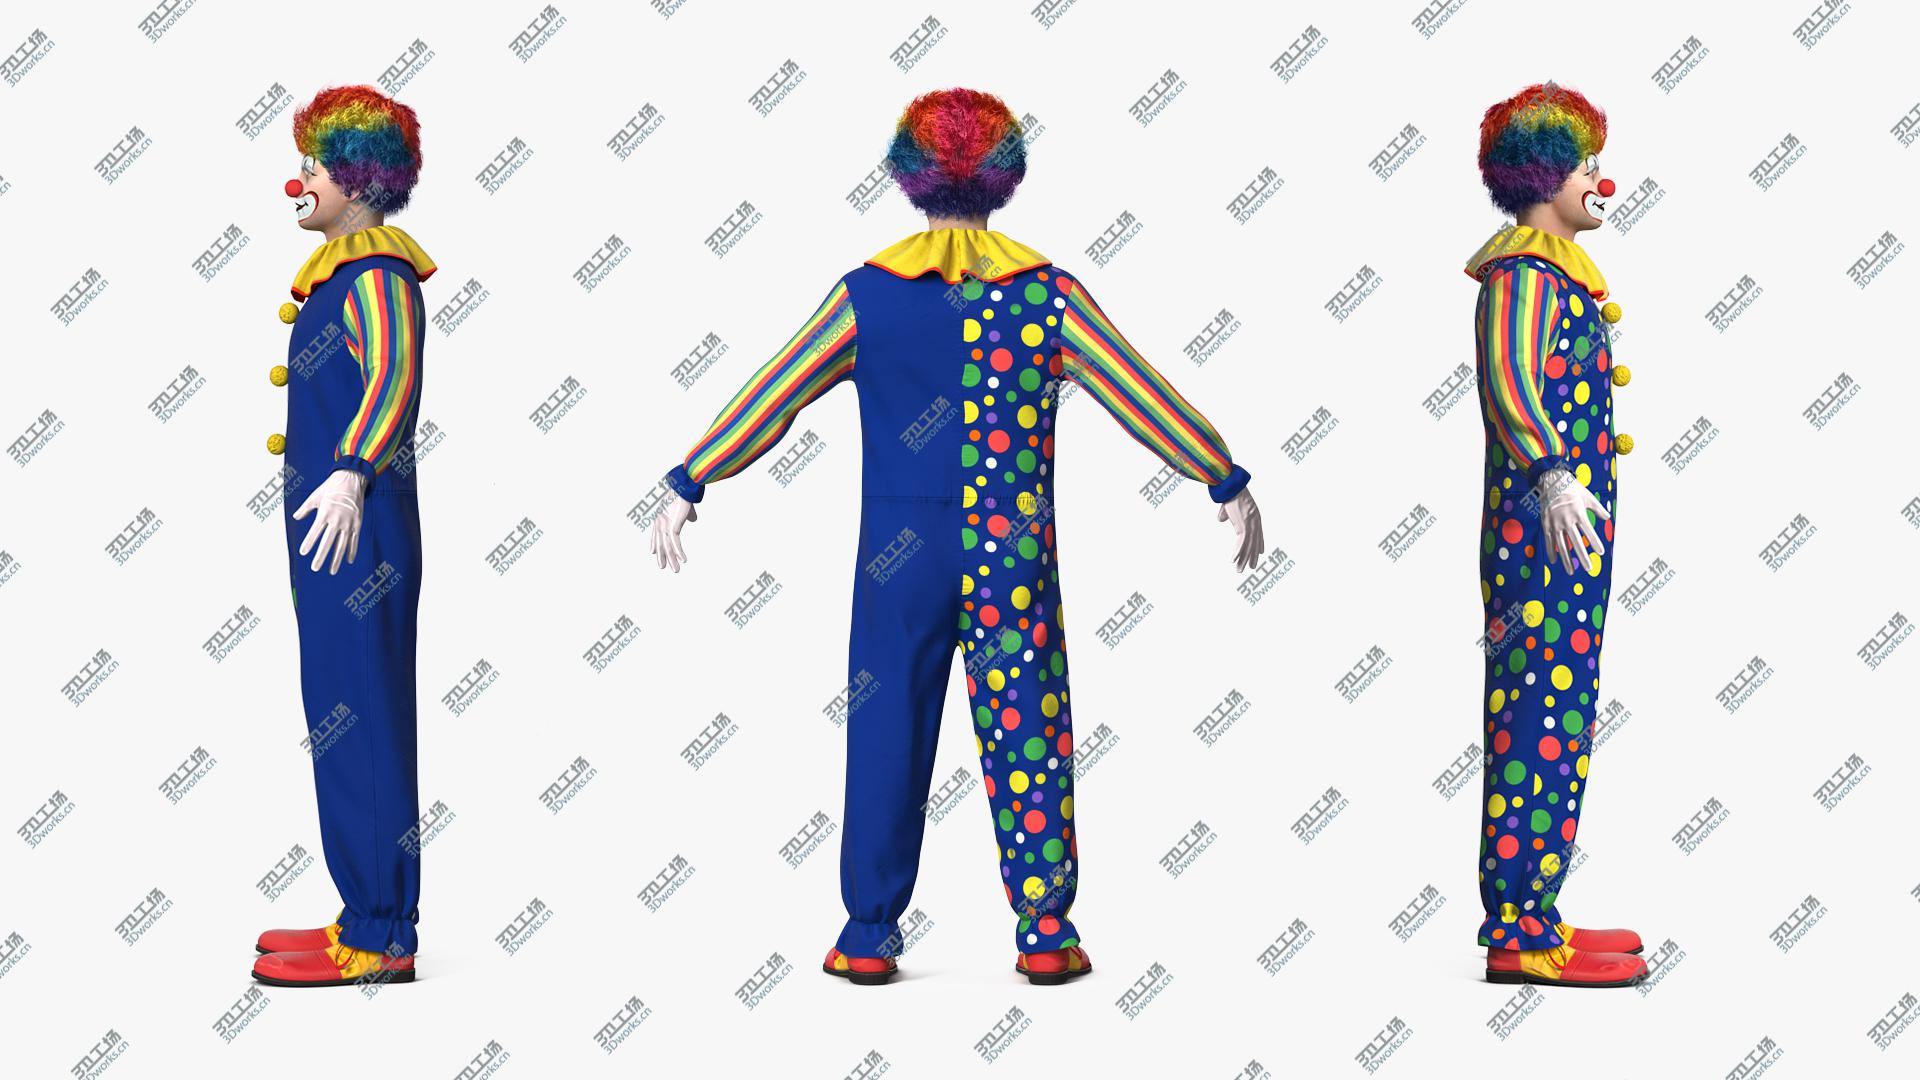 images/goods_img/202104093/3D model Funny Clown Costume Fur/1.jpg